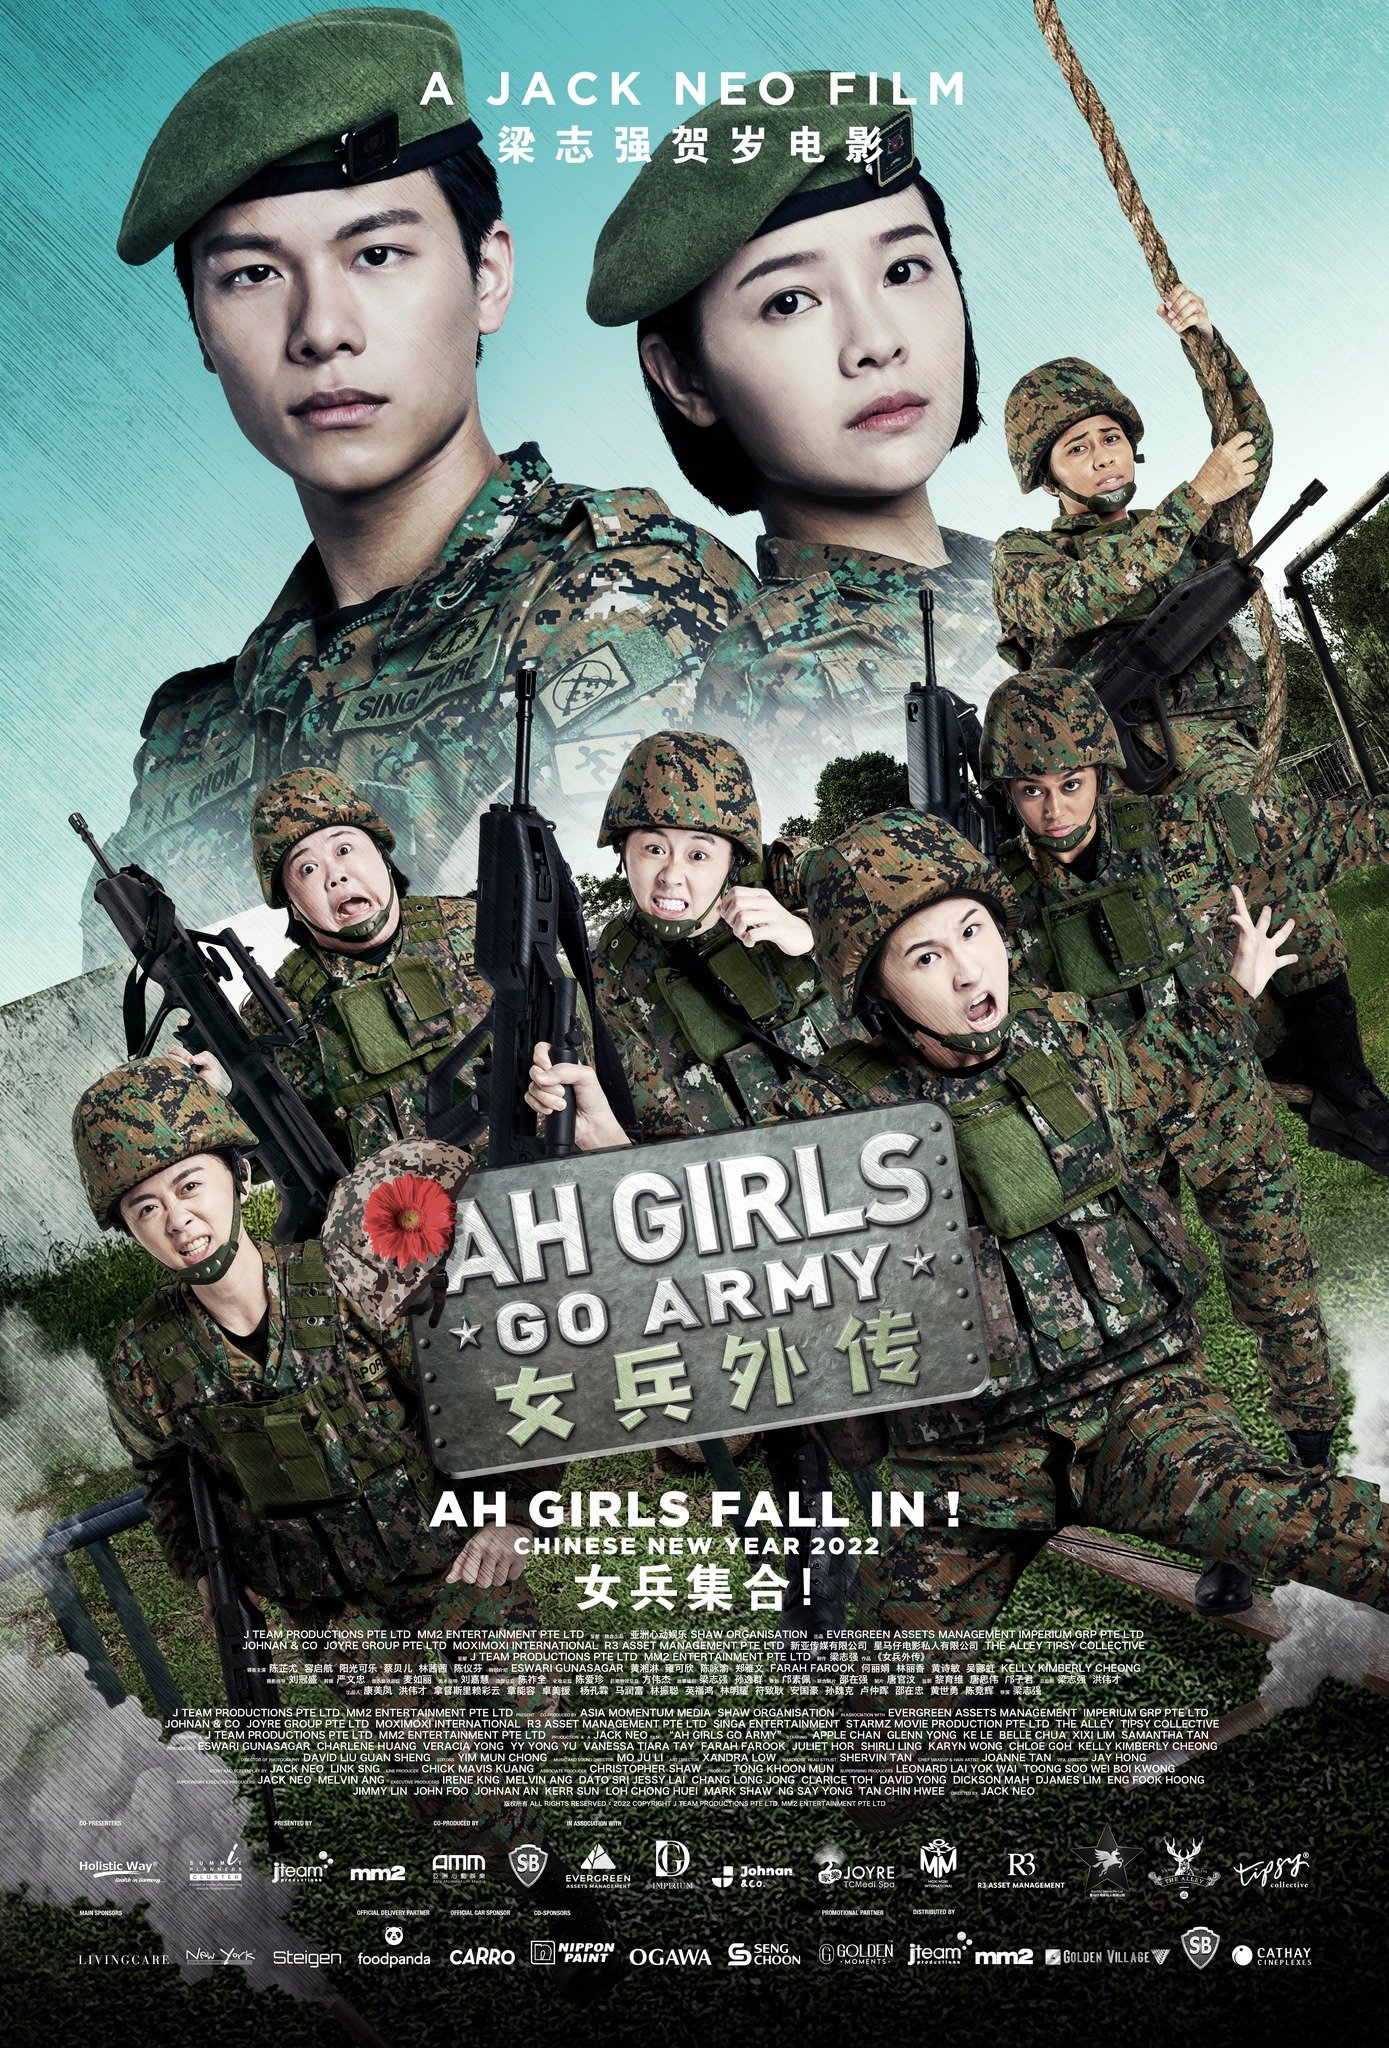 Ah girls go army sequel